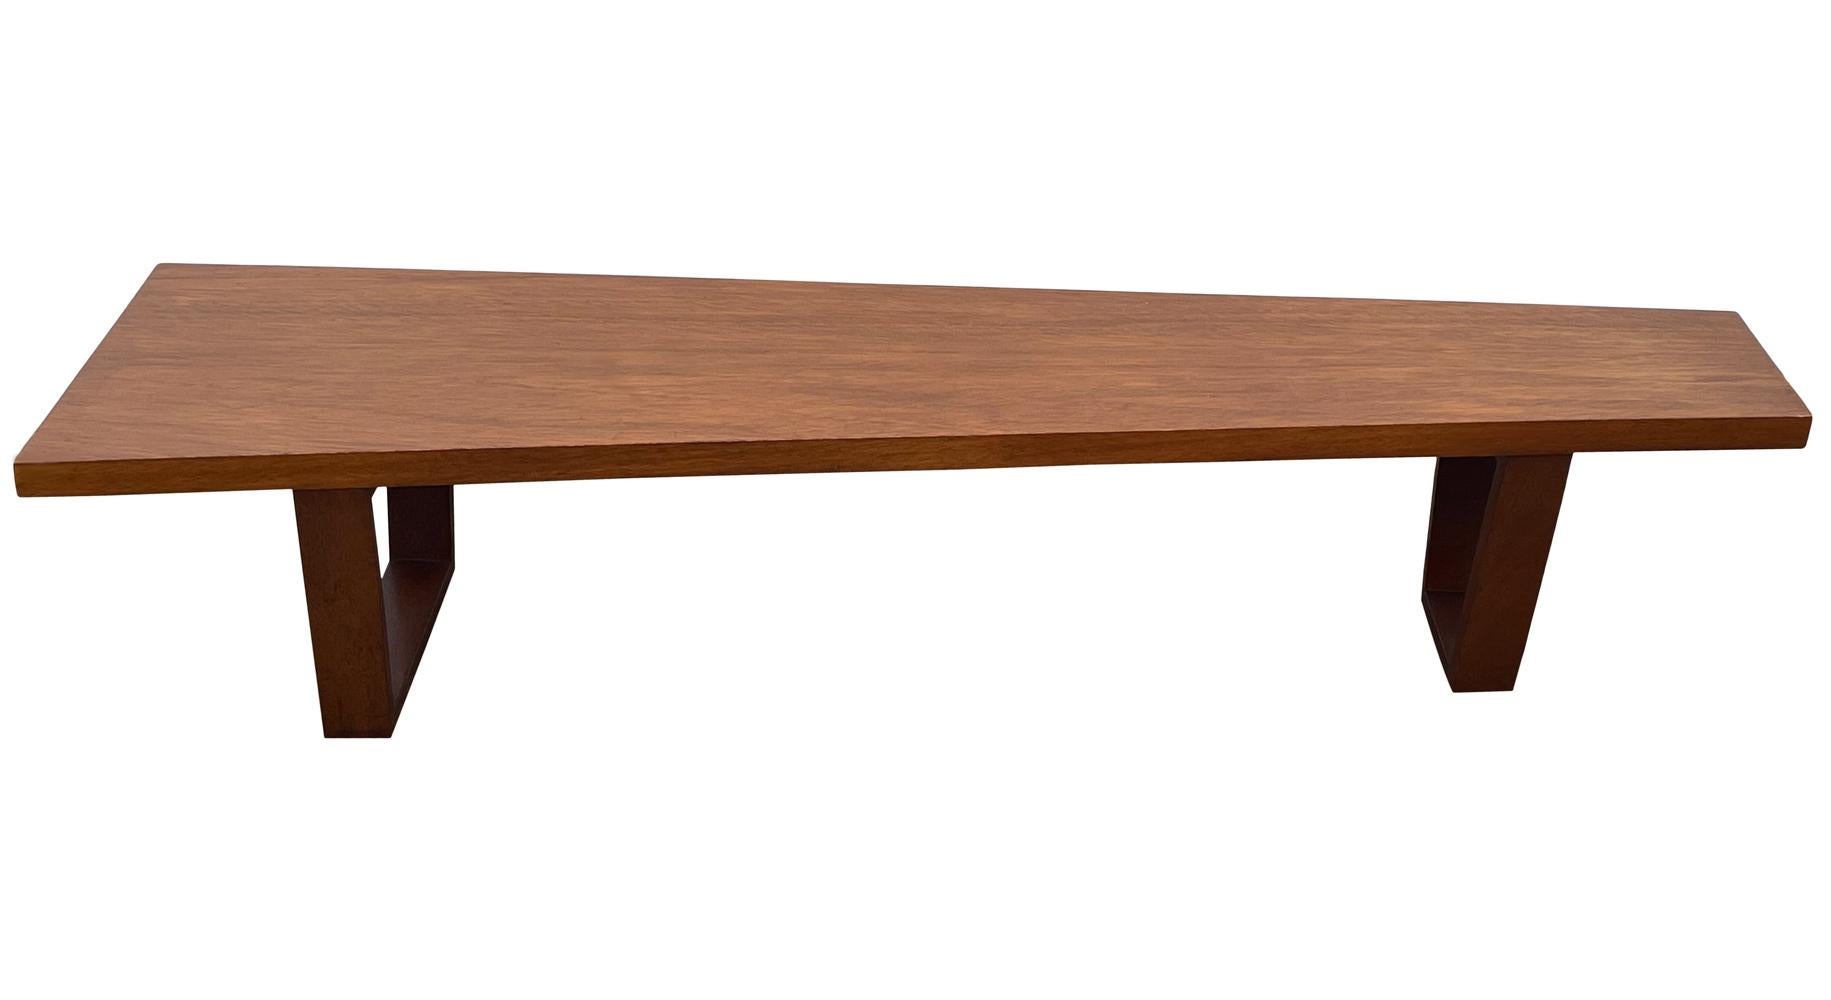 Eine wunderschön gearbeitete lange Bank oder Cocktailtisch aus den 1960er Jahren. Sie zeichnen sich durch ein gut proportioniertes, asymmetrisches Design mit Massivholzkonstruktion aus. Es ist sauber und einsatzbereit.